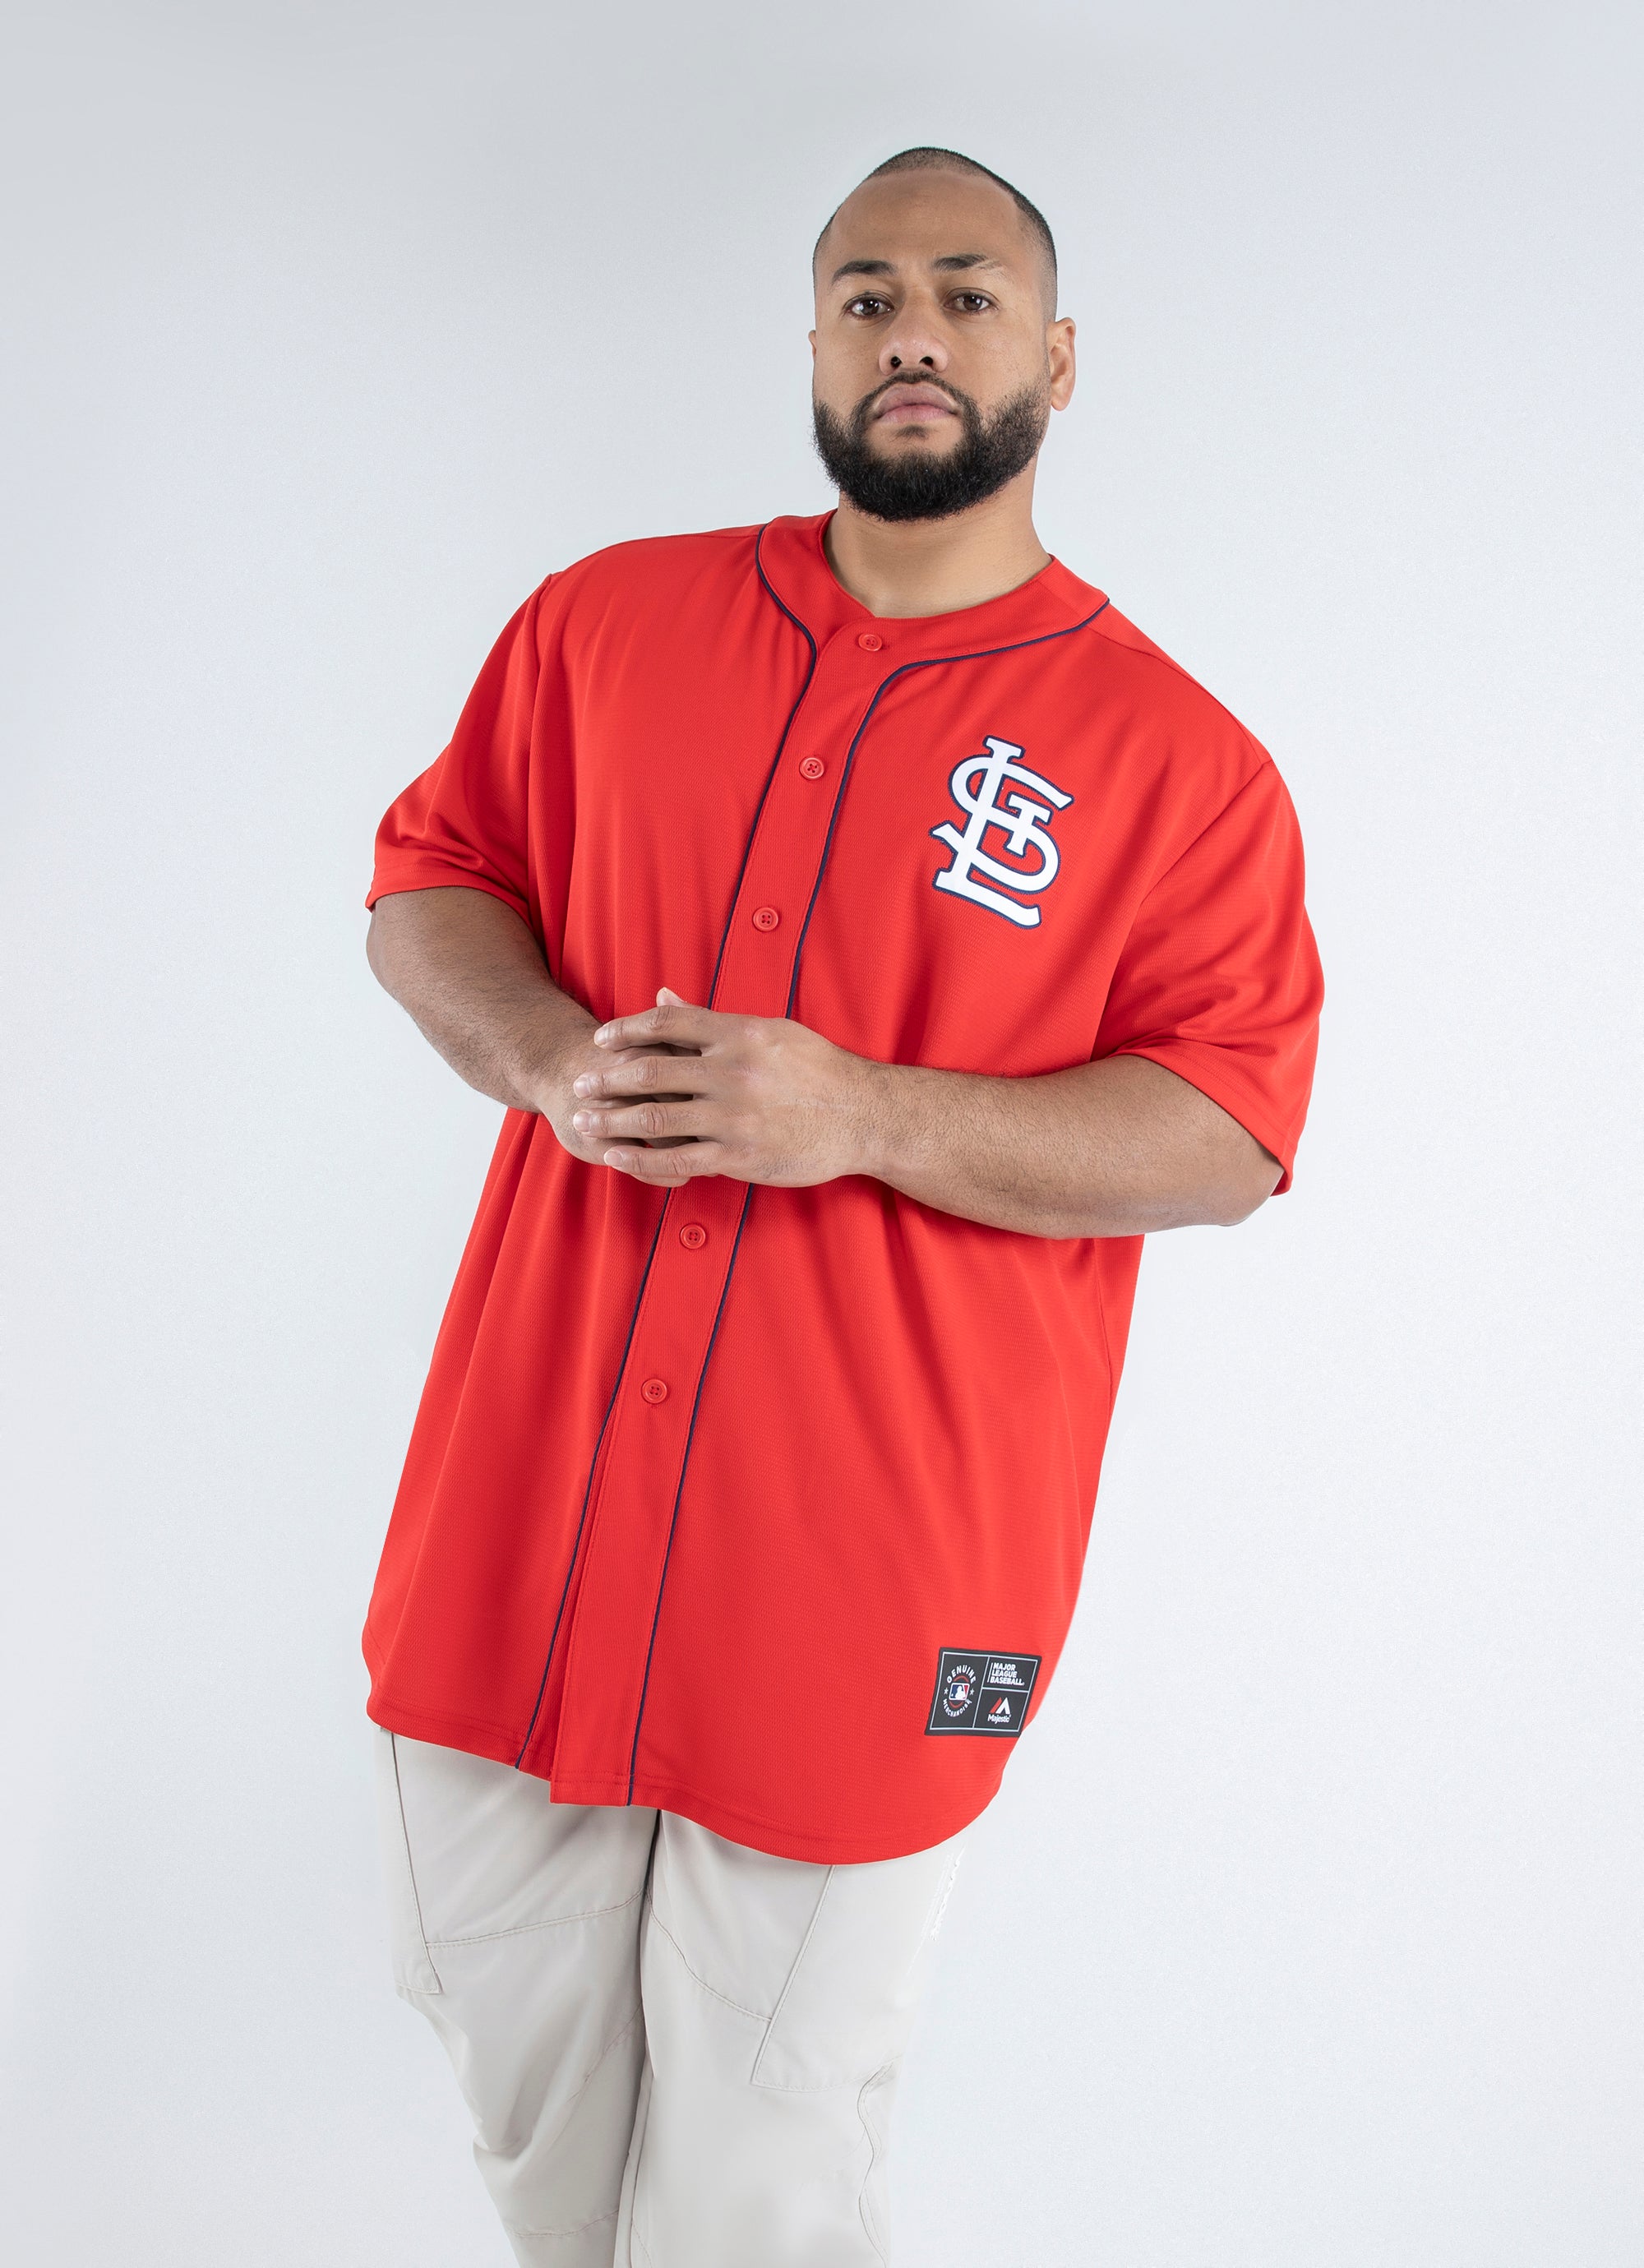 big and tall cardinals jersey